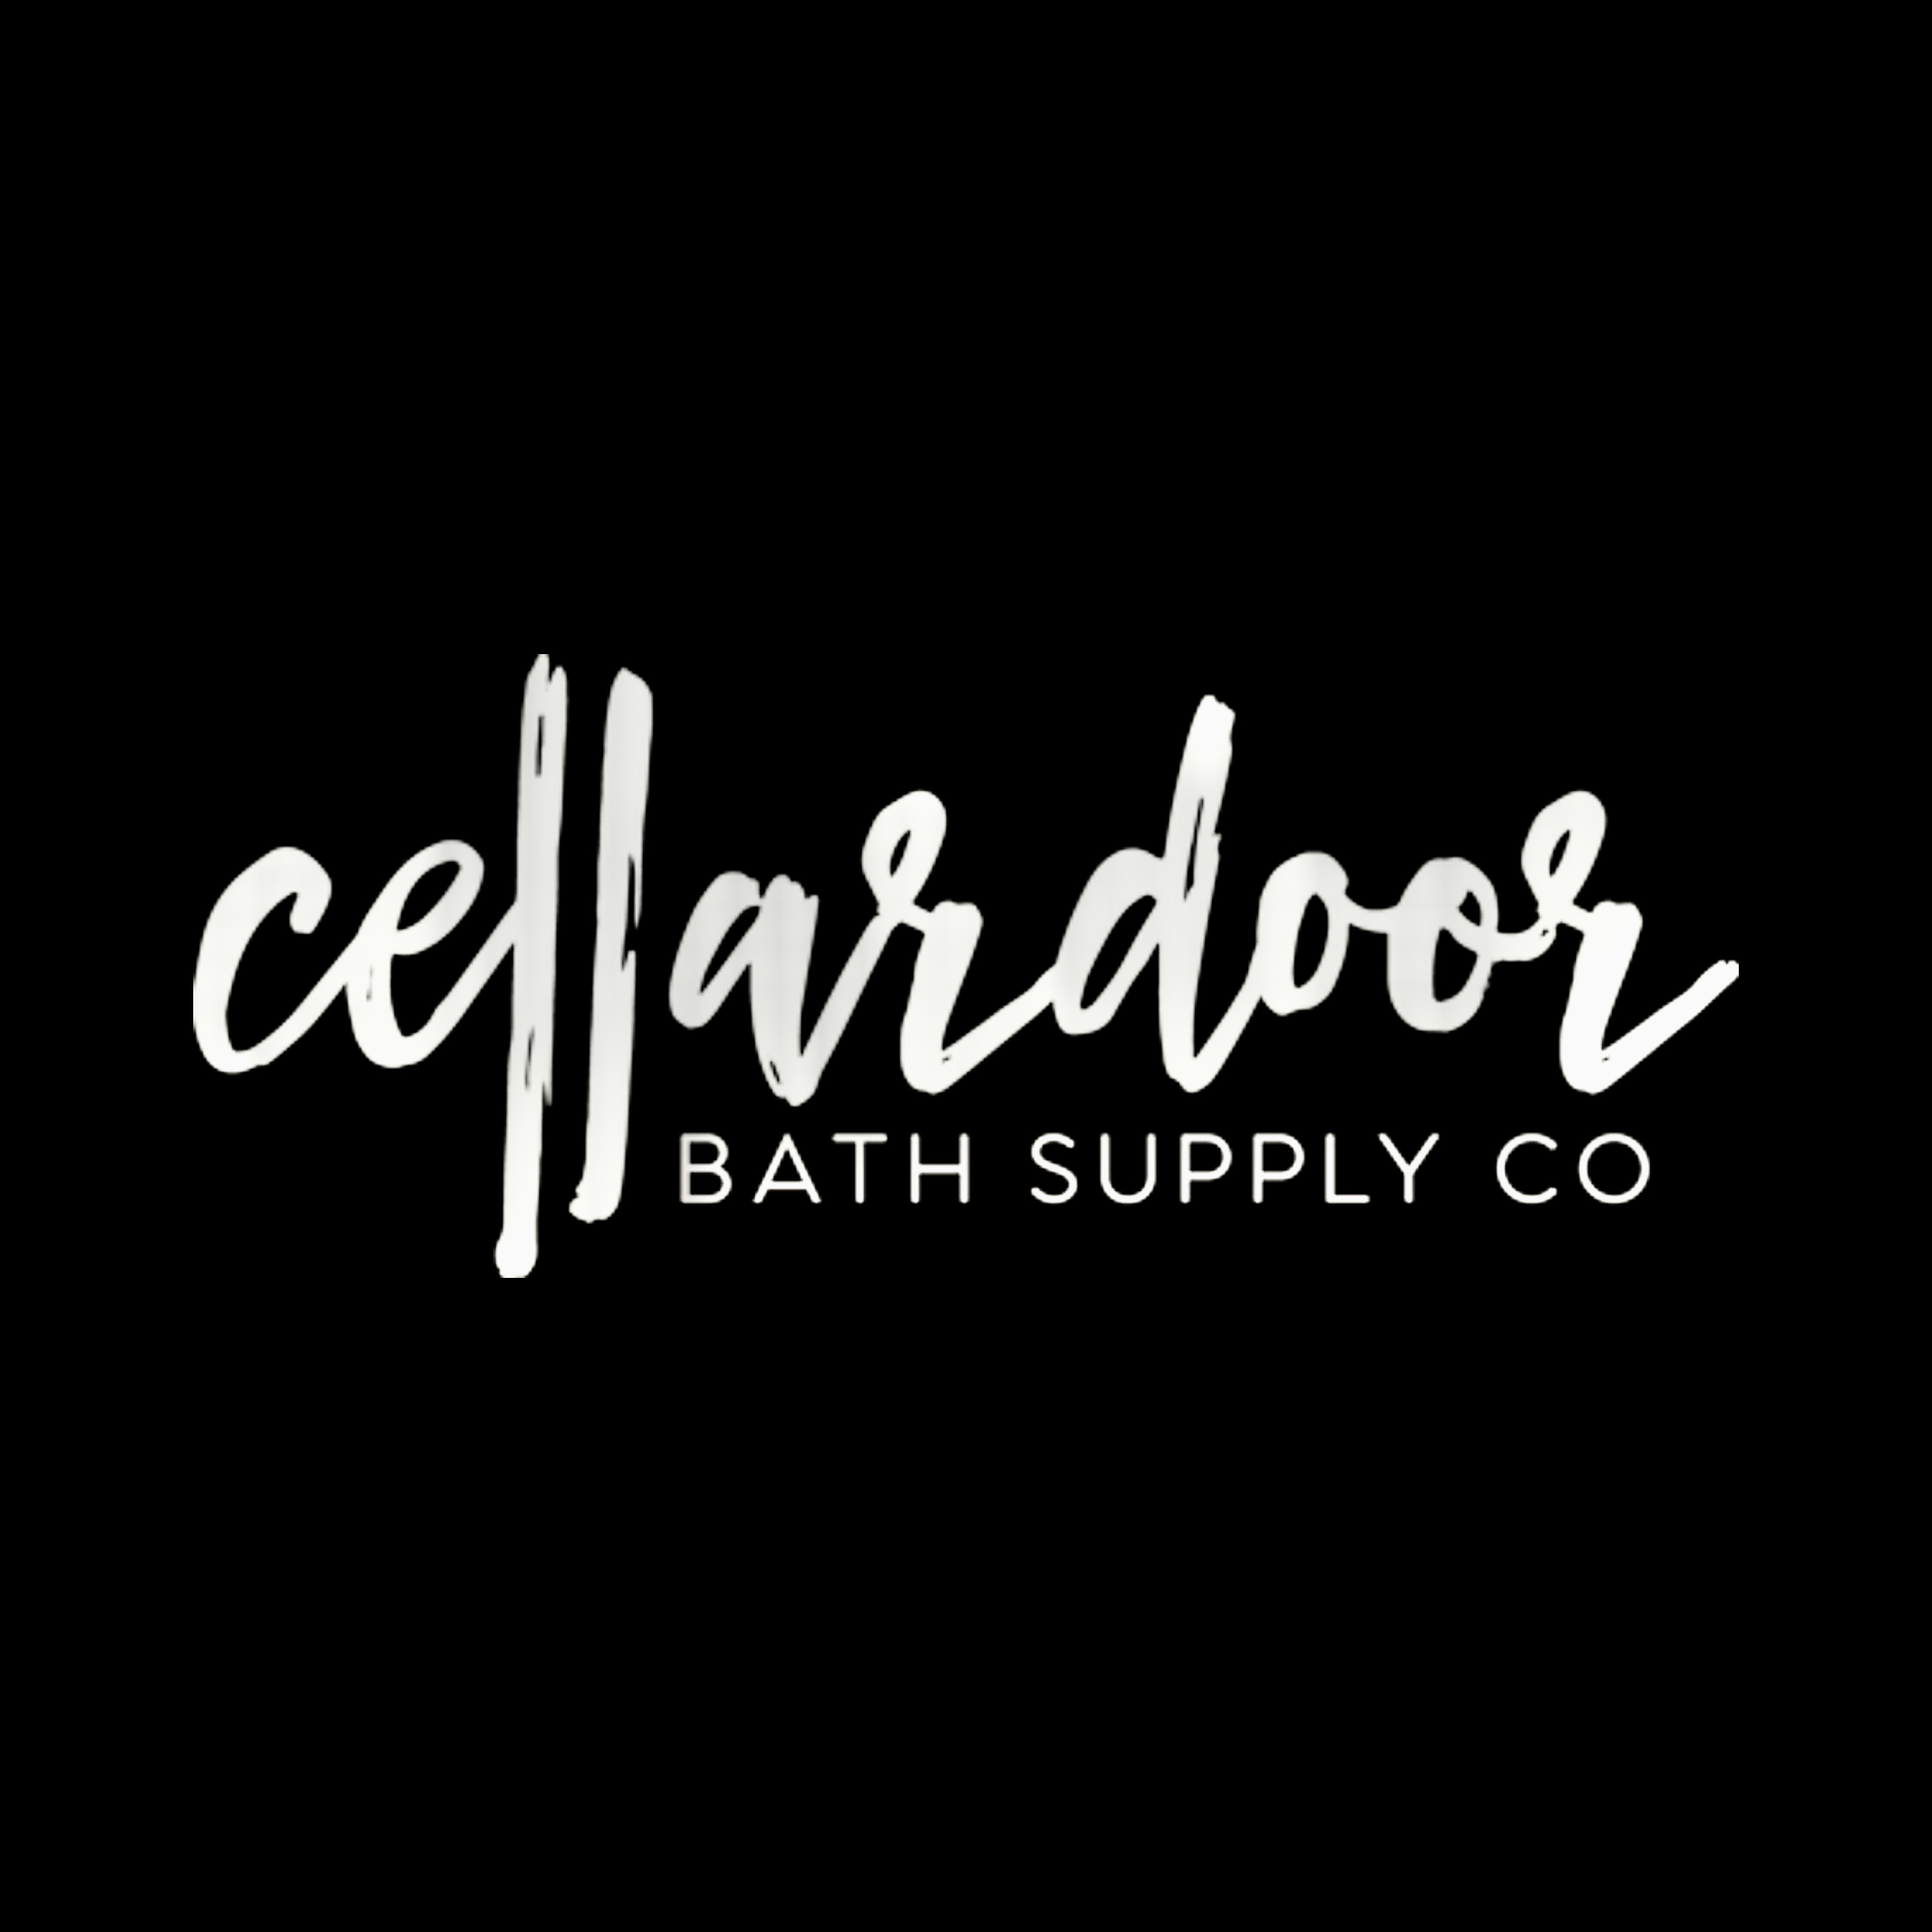 Cellardoor Bath Supply Co.